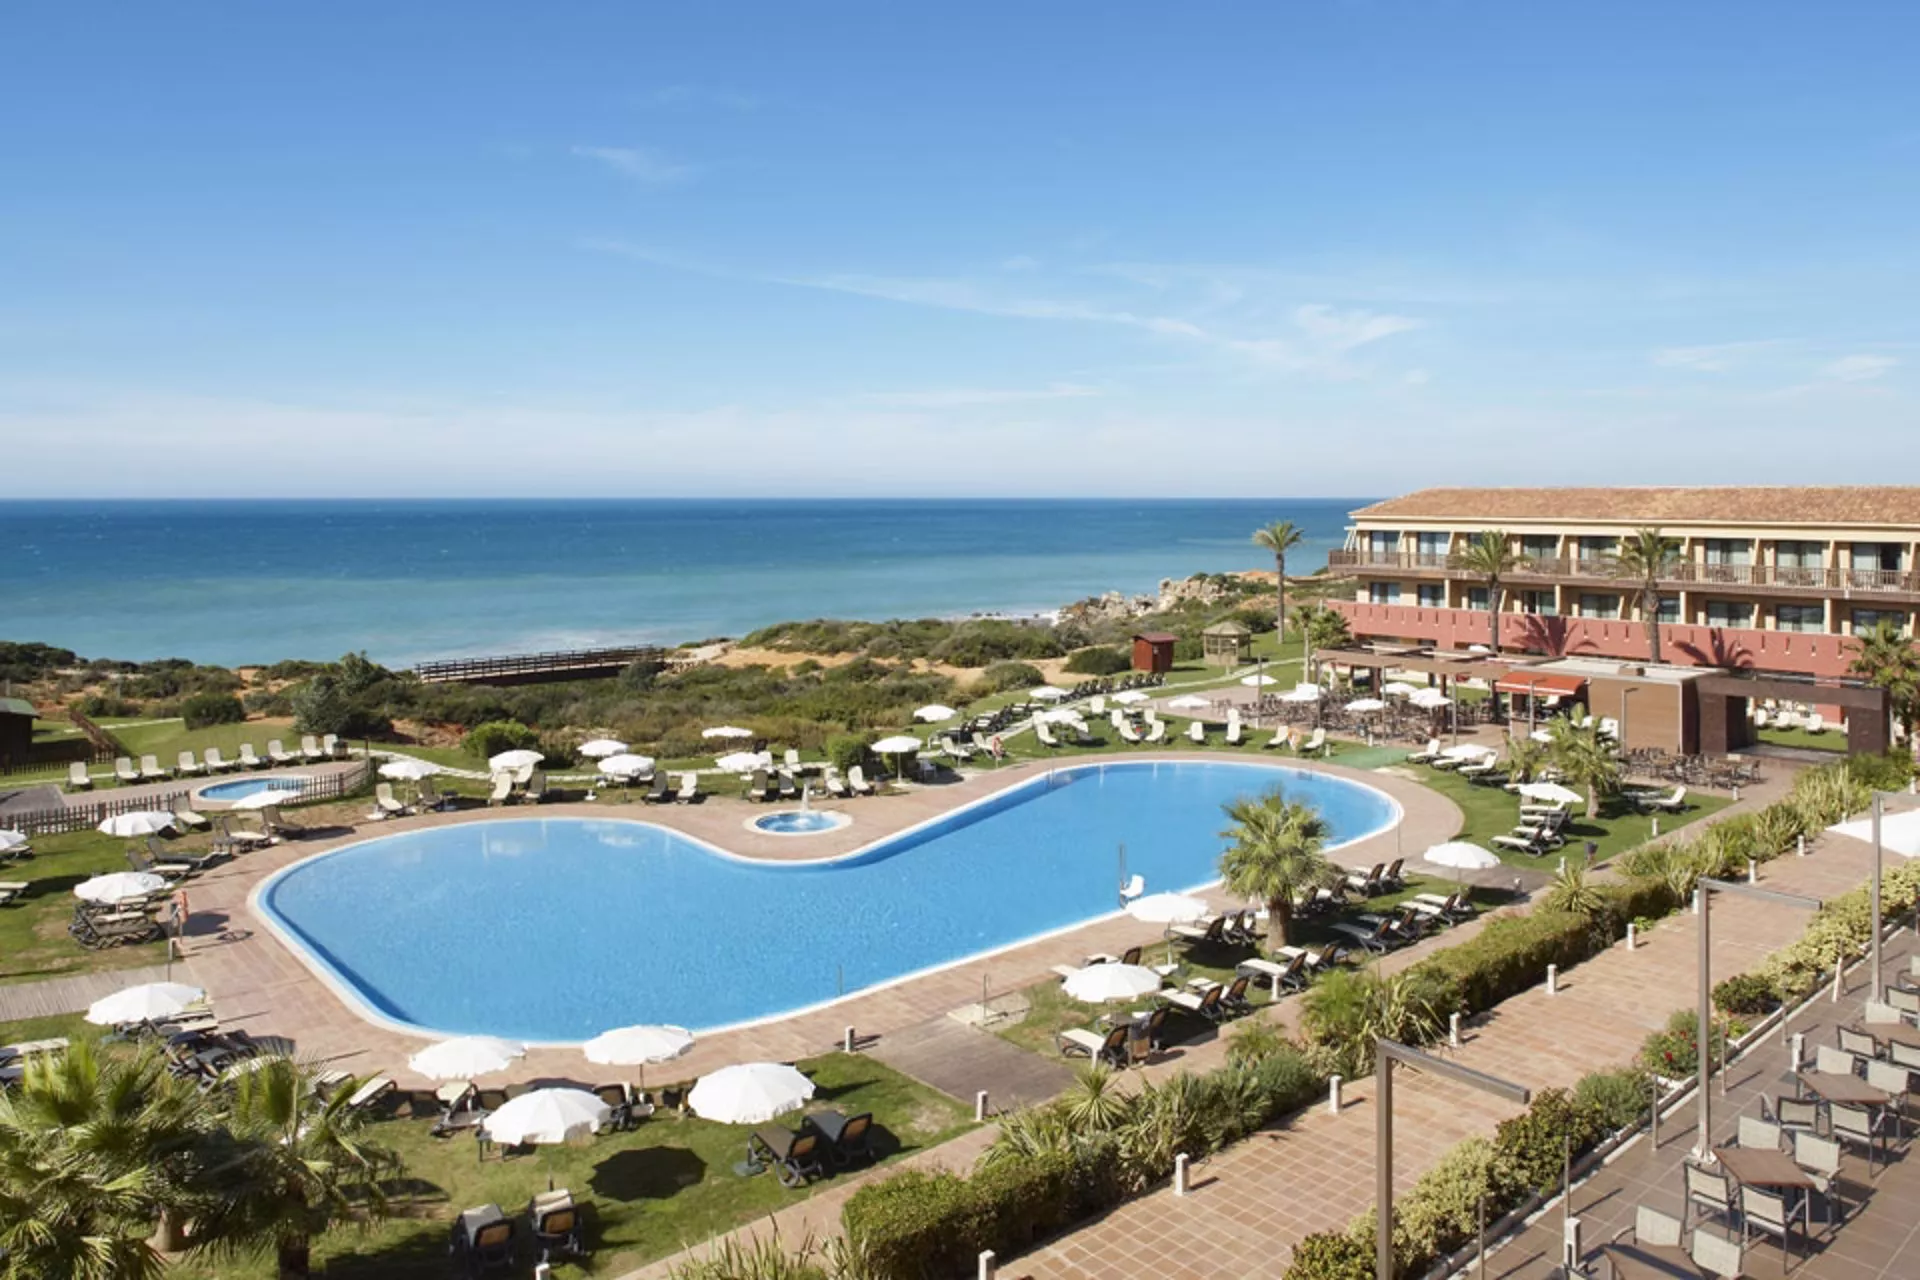 Vista del hotel confortel Calas Conil, en Conil, Cádiz